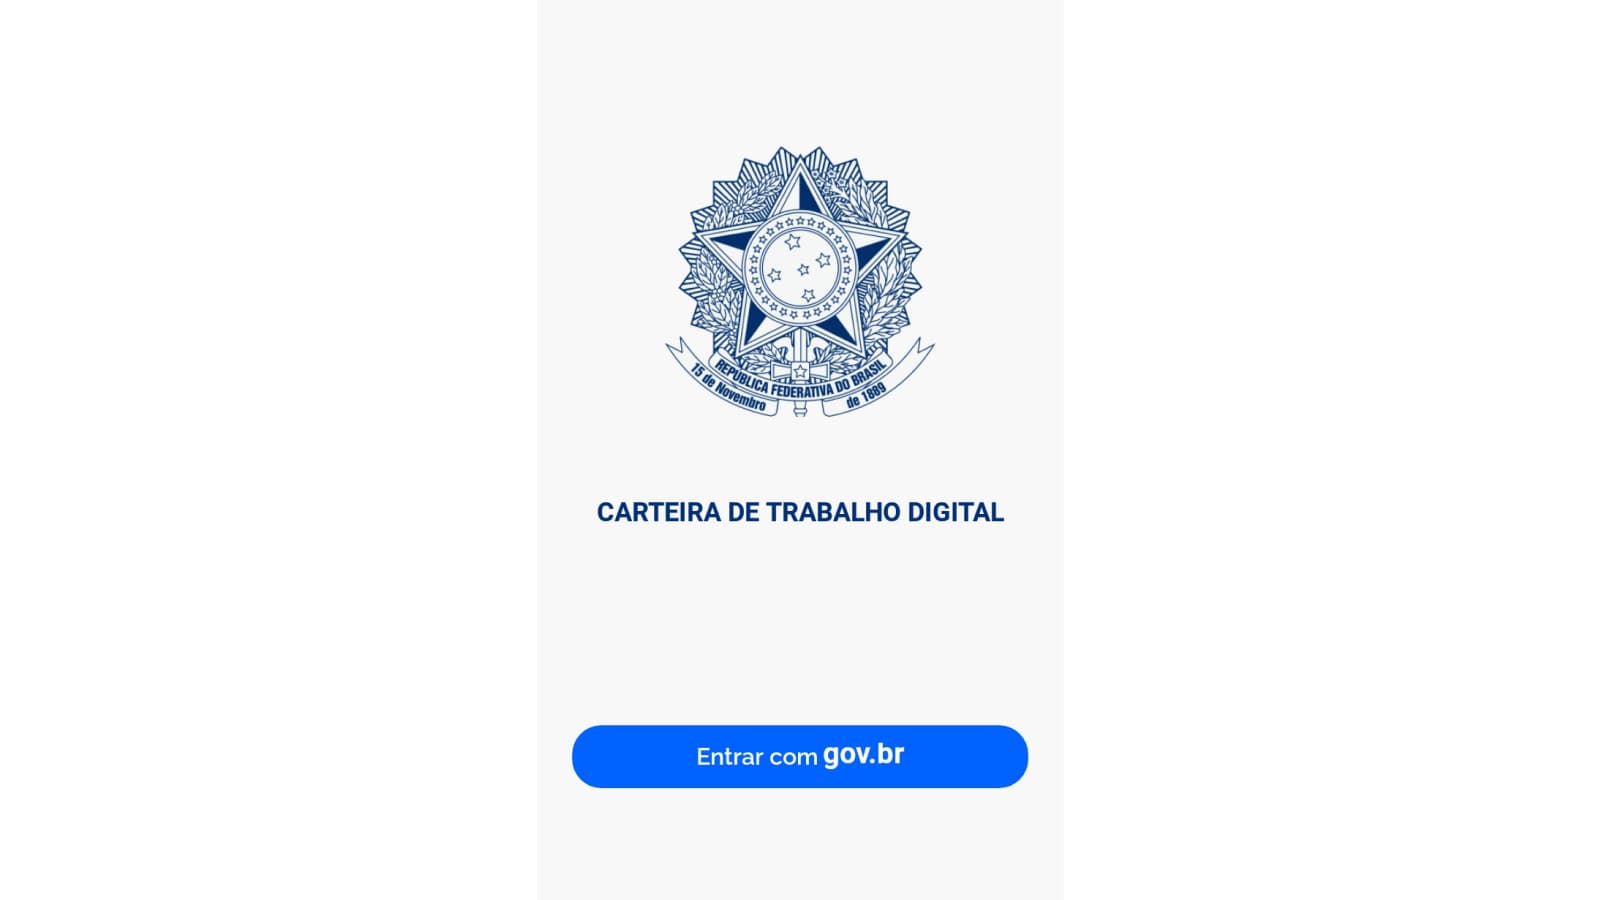 Tela inicial do app Carteira de Trabalho Digital